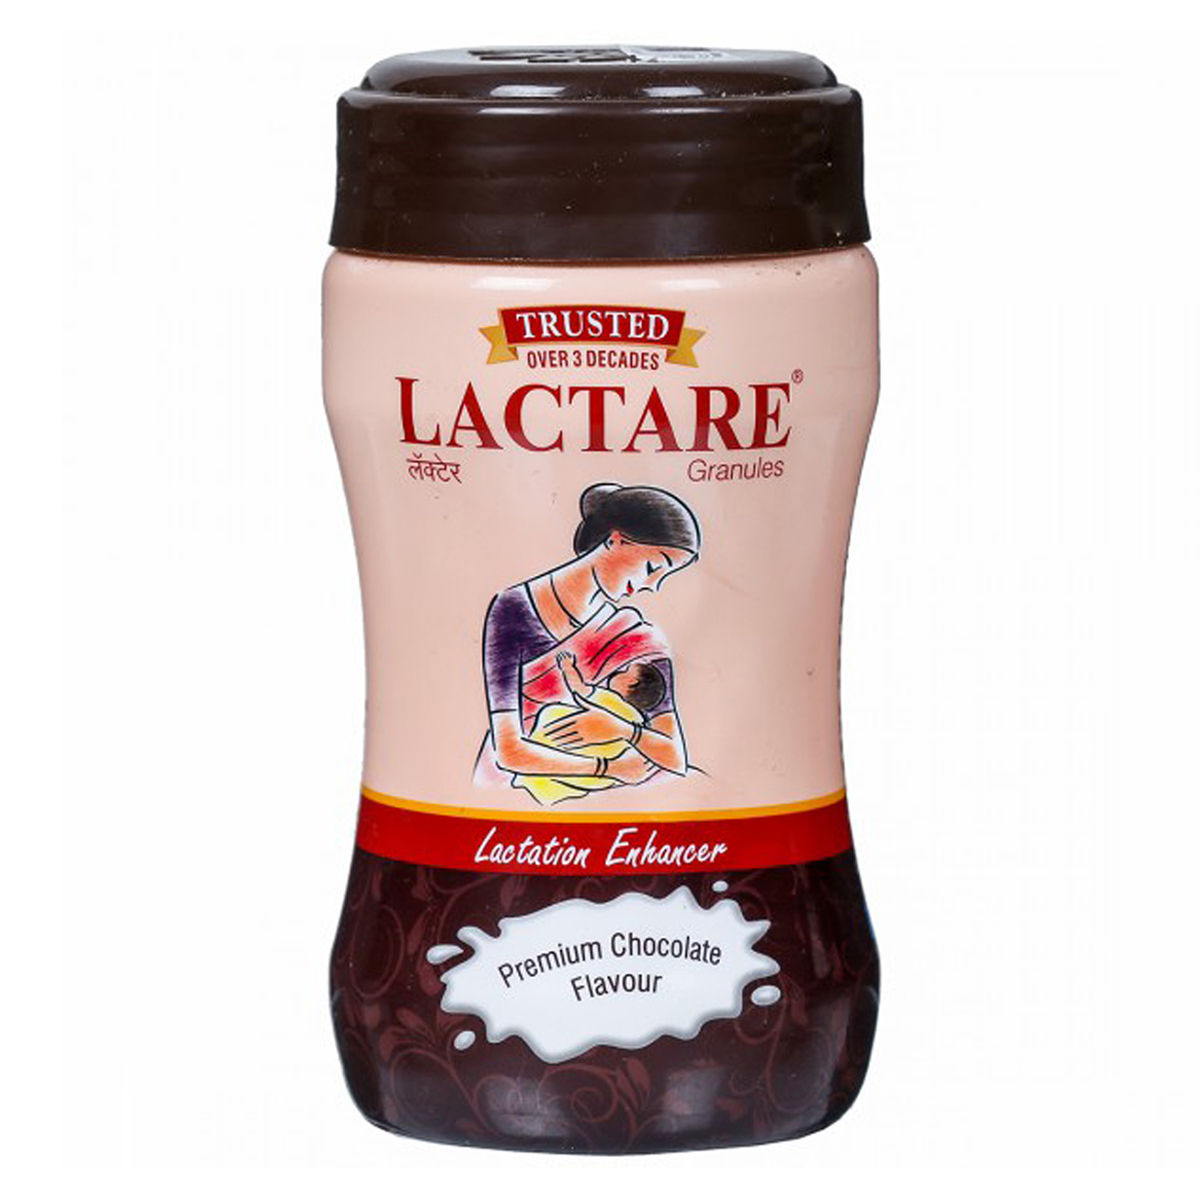 Buy Lactare Granules Premium Chocolate Flavour Lactation Enhancer, 250 gm Jar Online